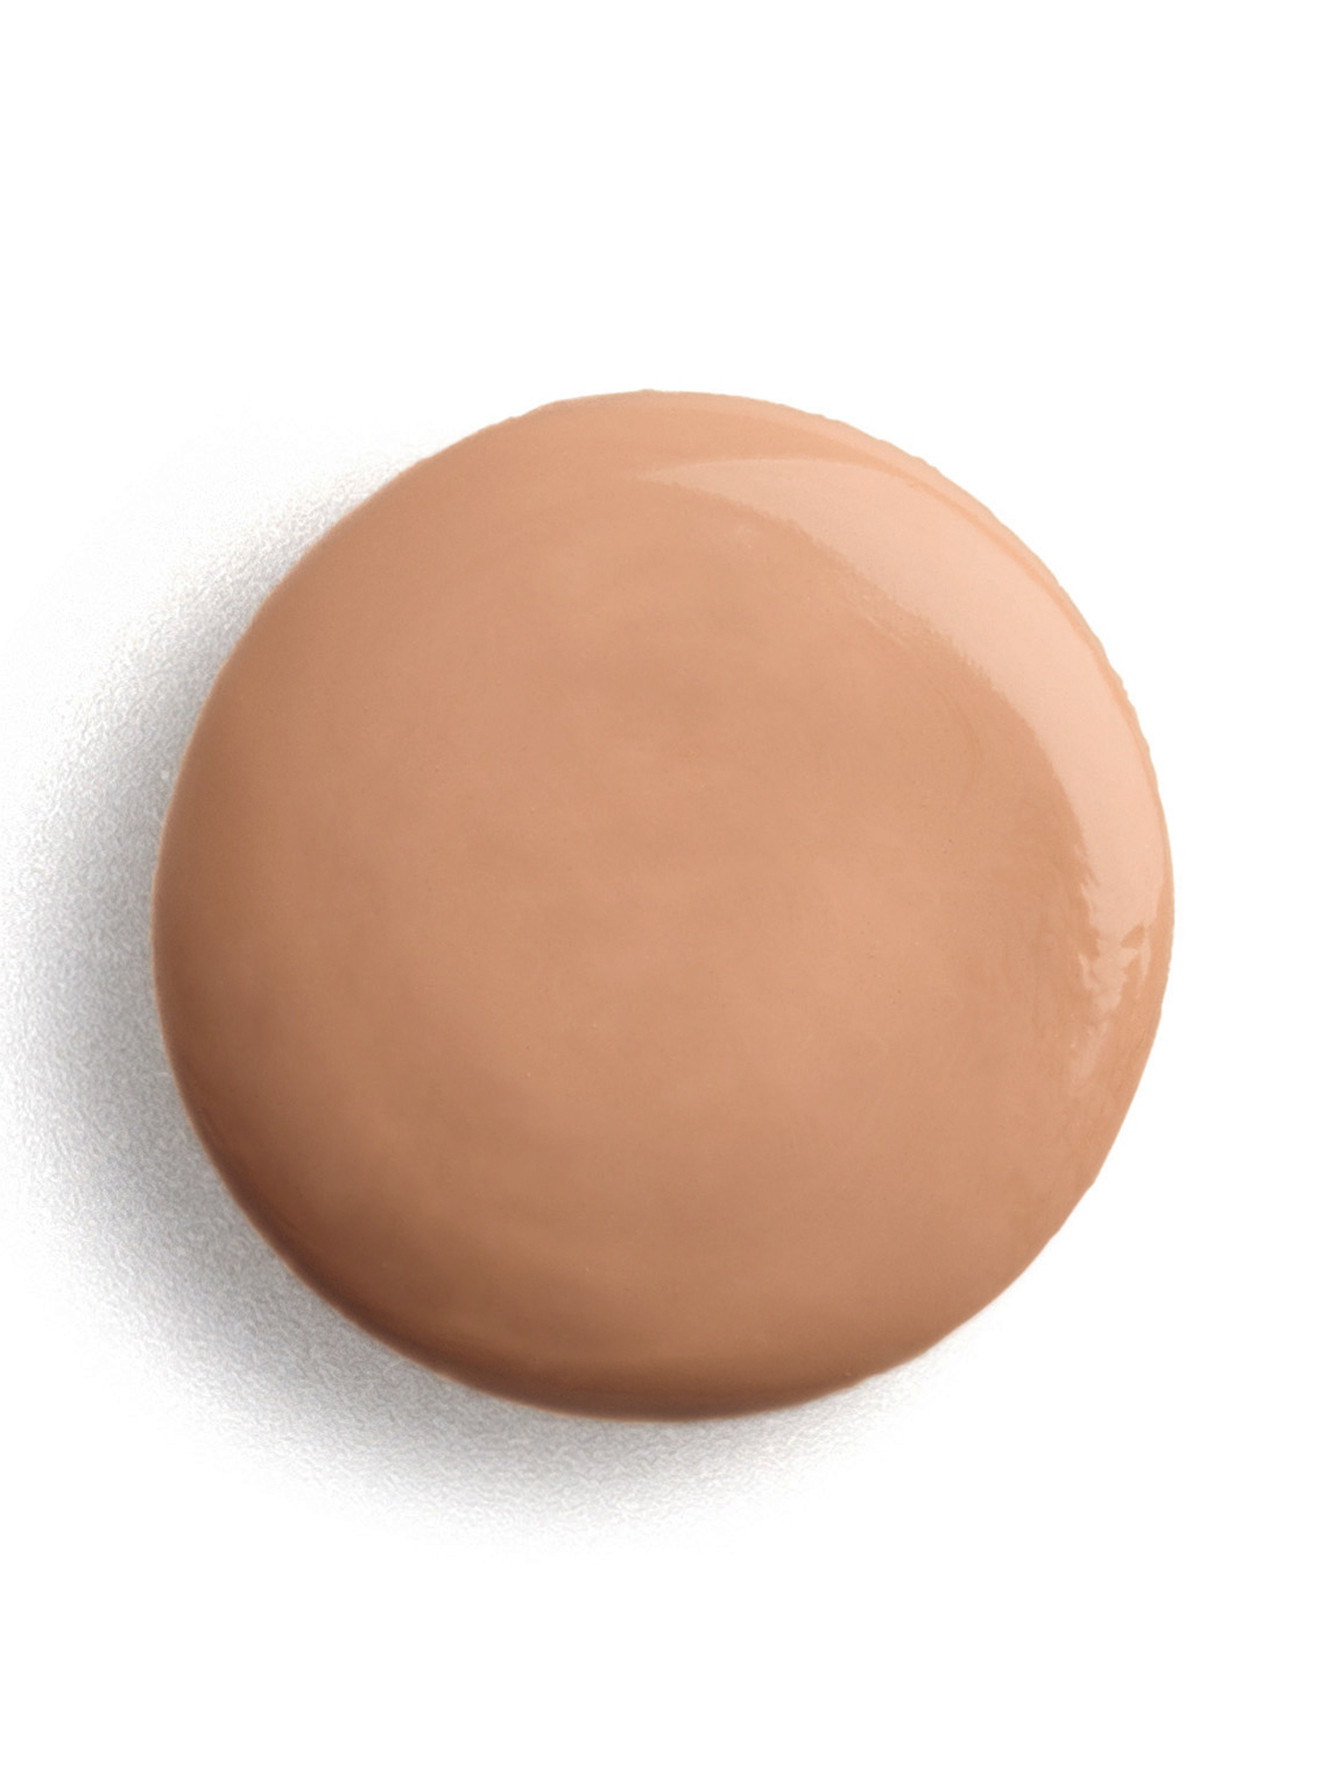 Тональный фитокрем - № 2 Soft beige, Phyto Teint Expert,30ml - Общий вид